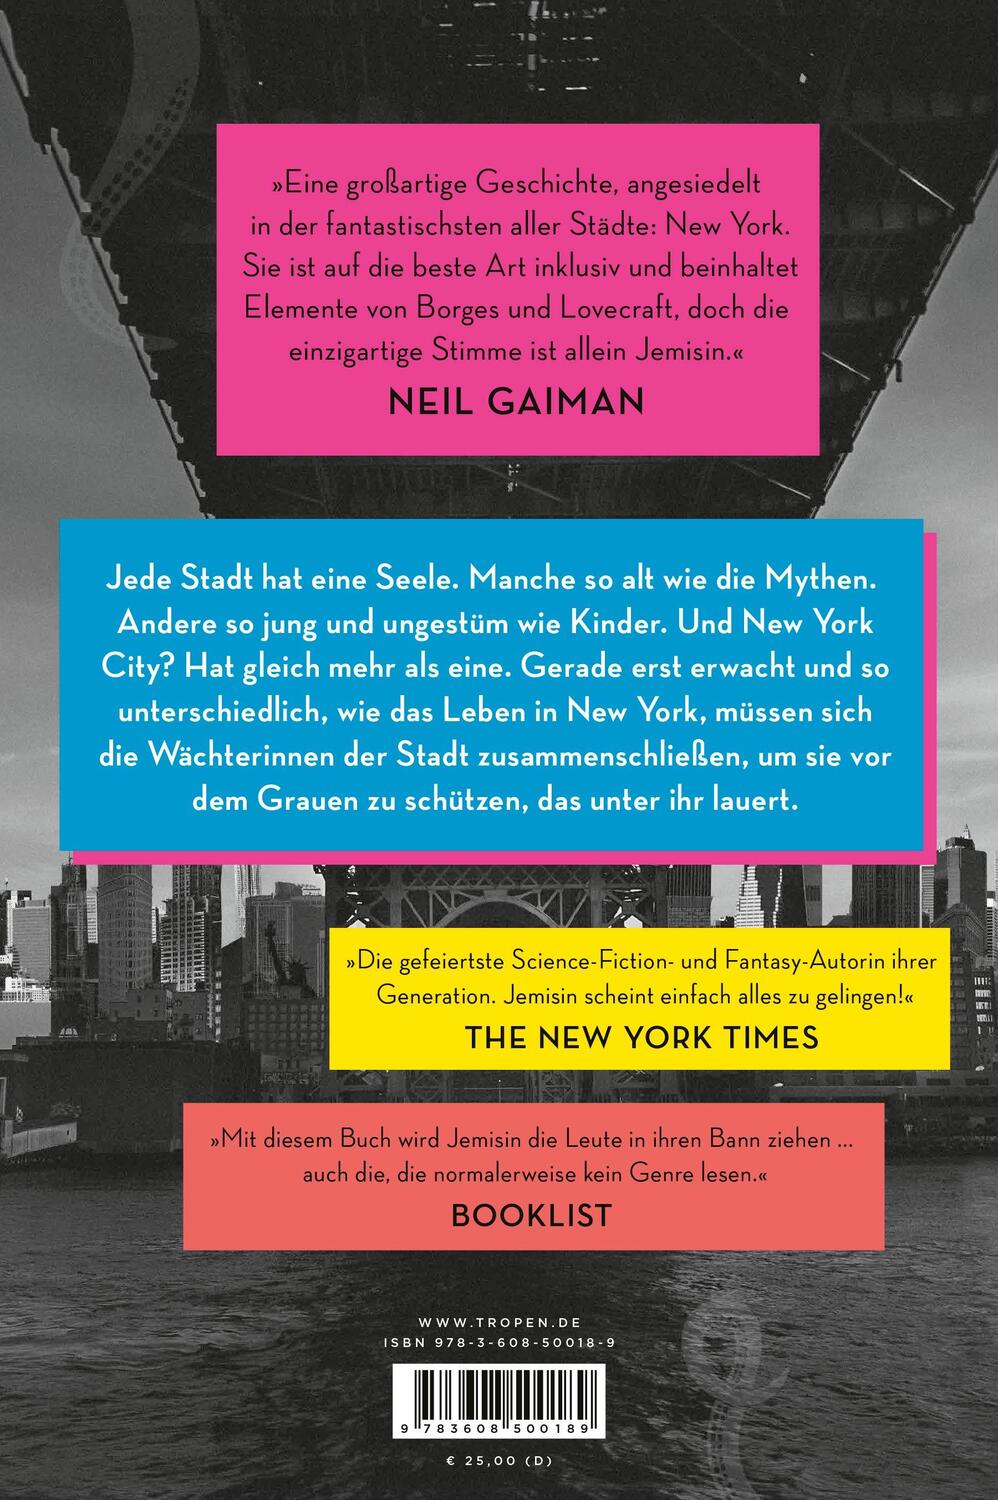 Rückseite: 9783608500189 | Die Wächterinnen von New York | Roman | N. K. Jemisin | Buch | 544 S.